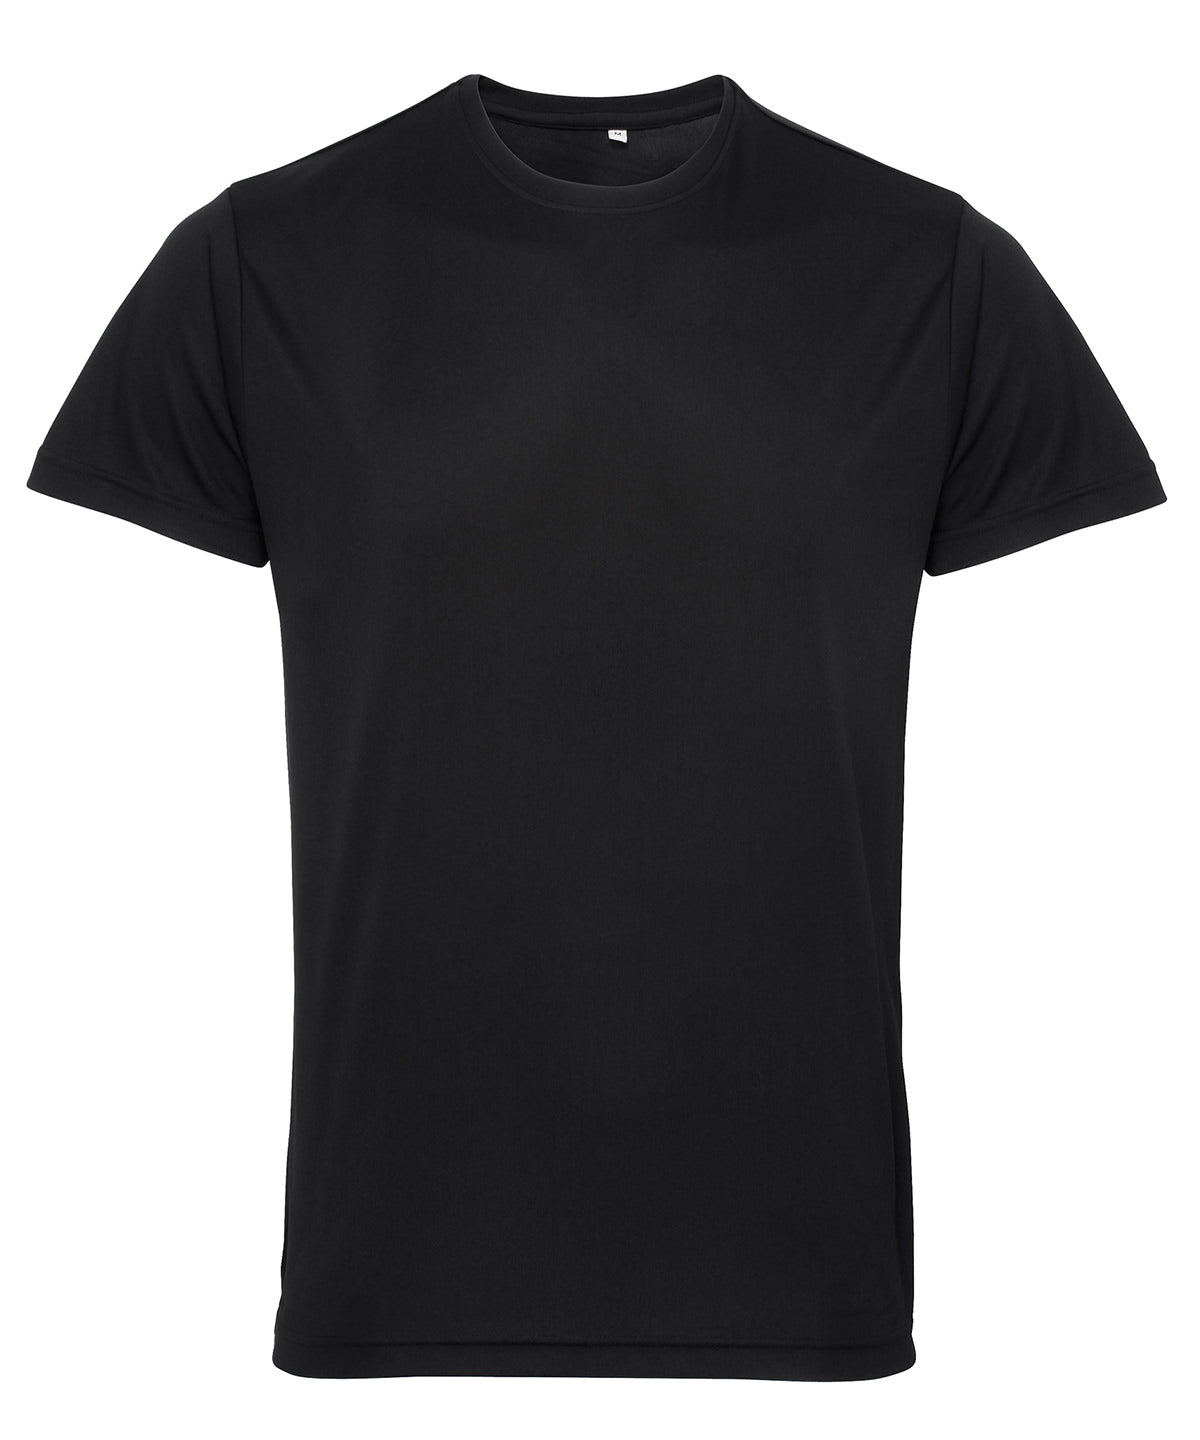 TriDri Performance T-Shirt Black